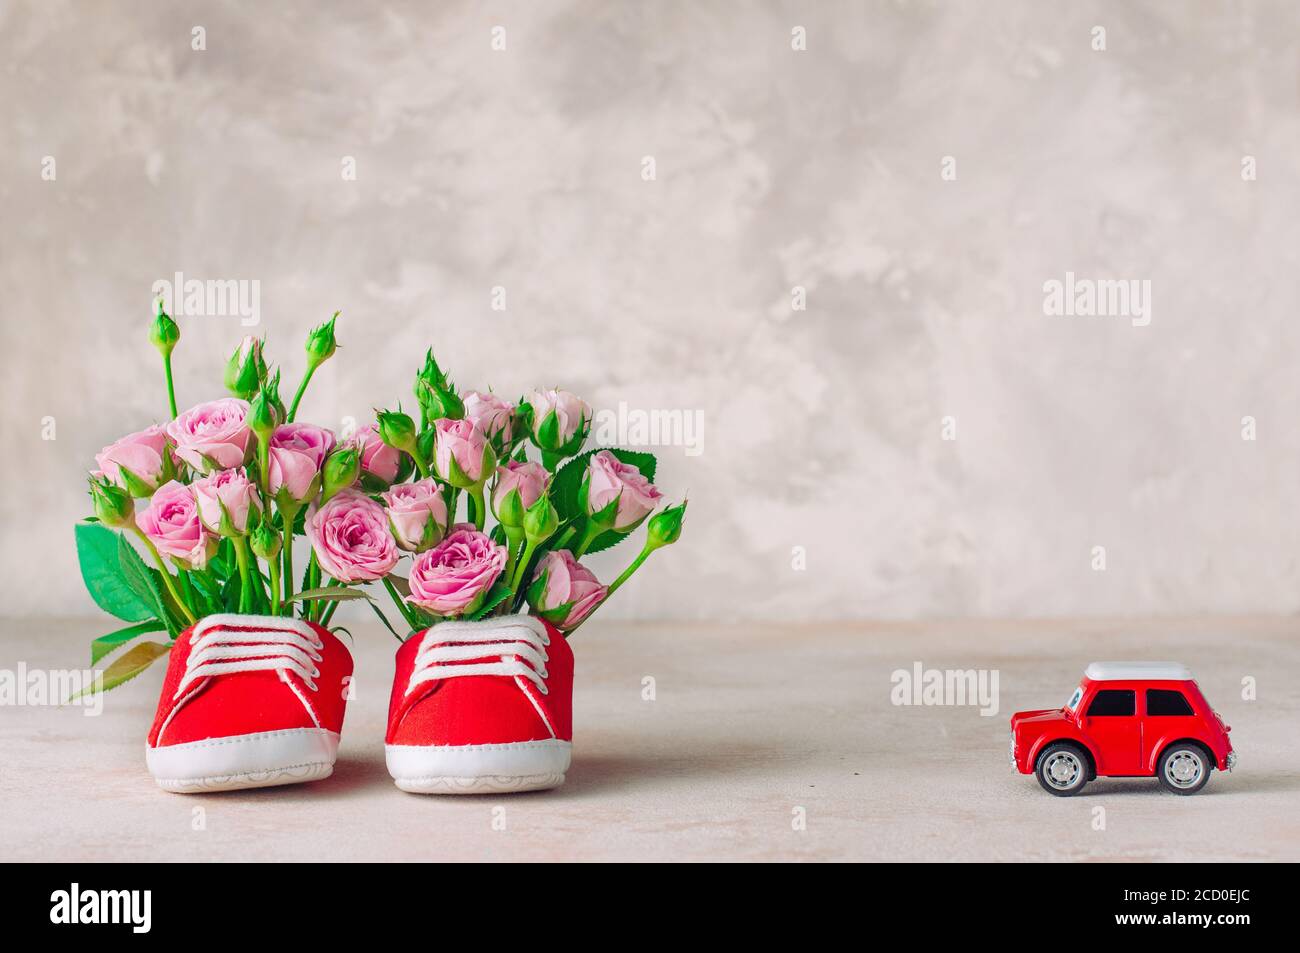 Paio di scarpe rosse per bambini riempite con fiori di rose e giocattoli per auto. Spazio vuoto per il testo. Foto Stock